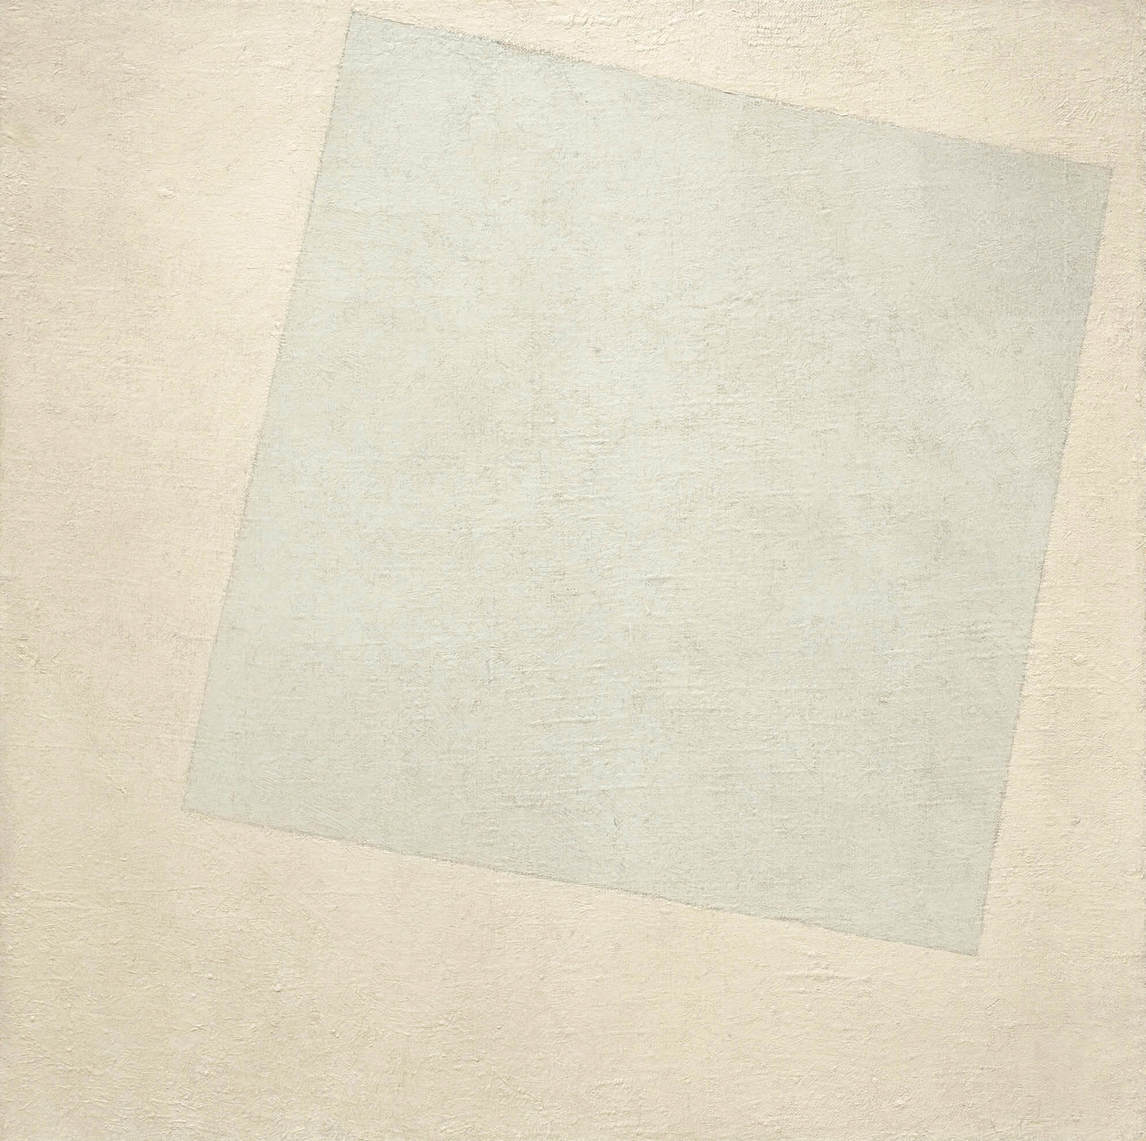 White on White, Carré blanc sur fond blanc, 1918, Kazimir Malevich